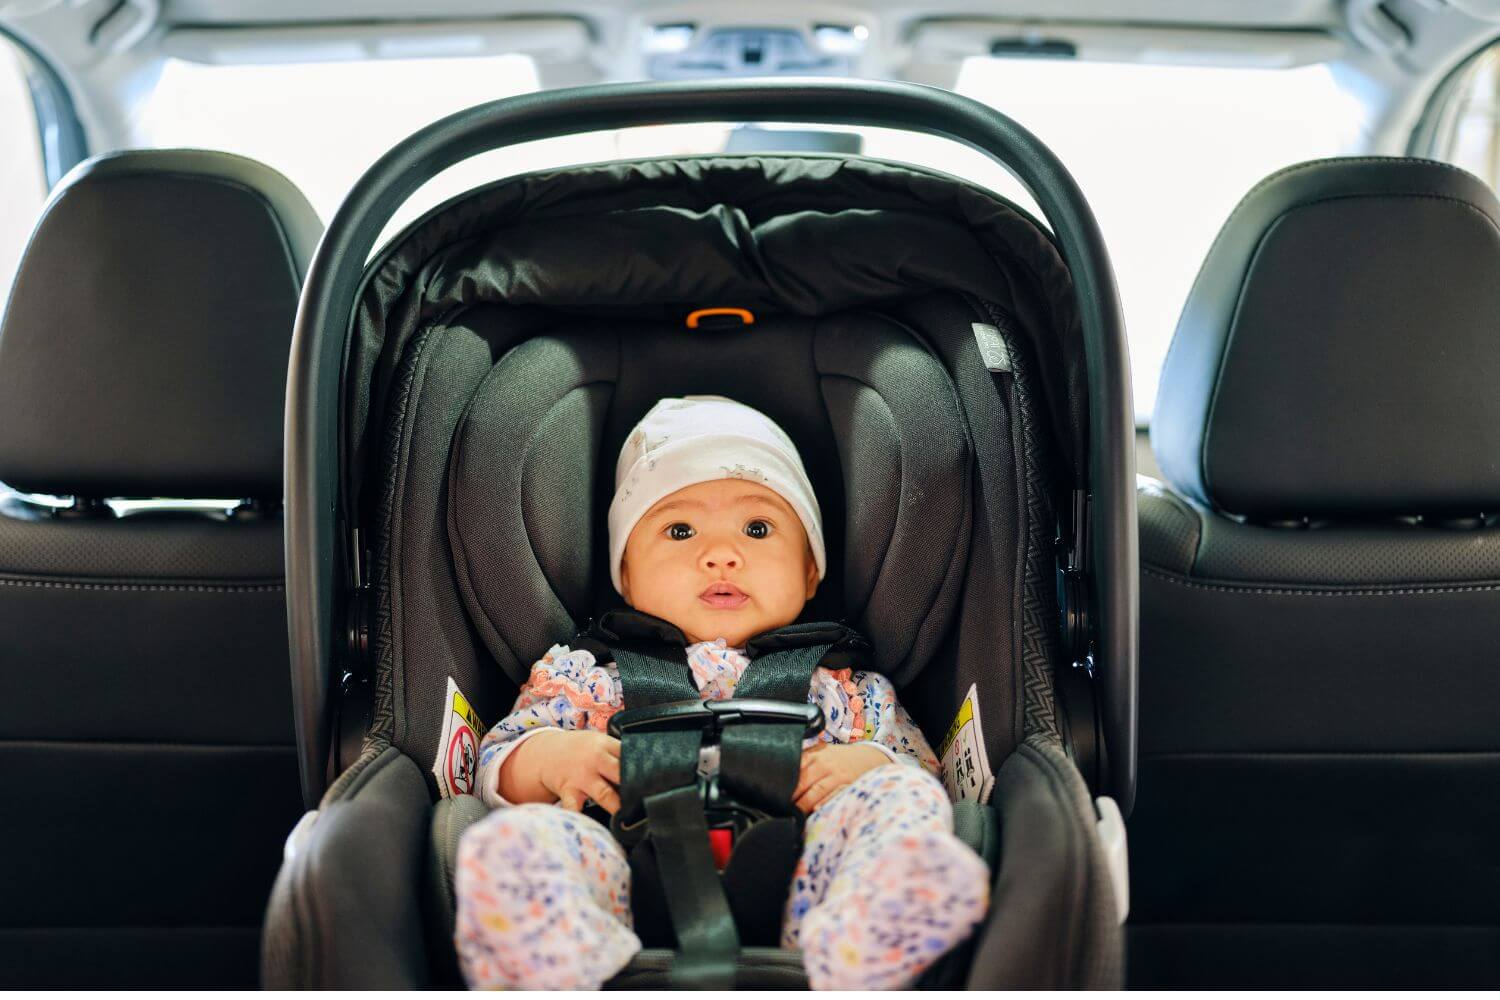 A newborn baby in a car seat